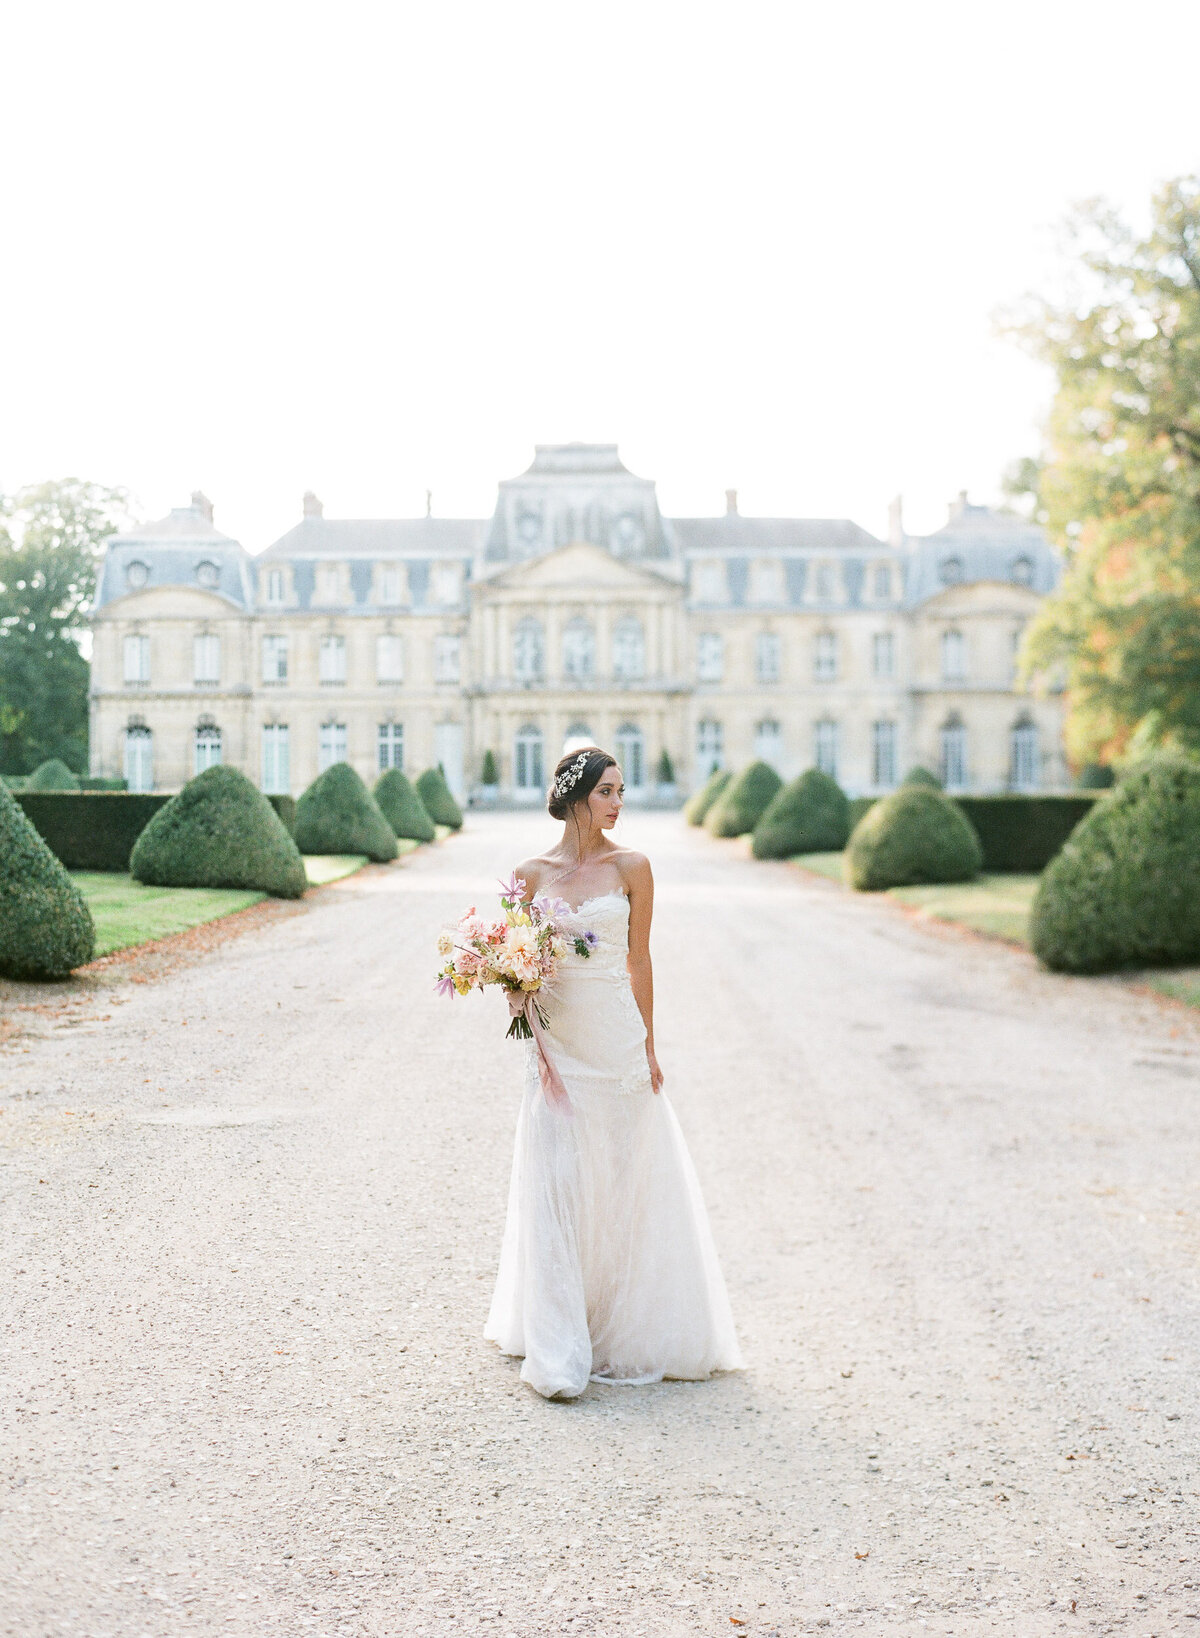 Alexandra-Vonk-wedding-chateau-de-champlatreux-France-24